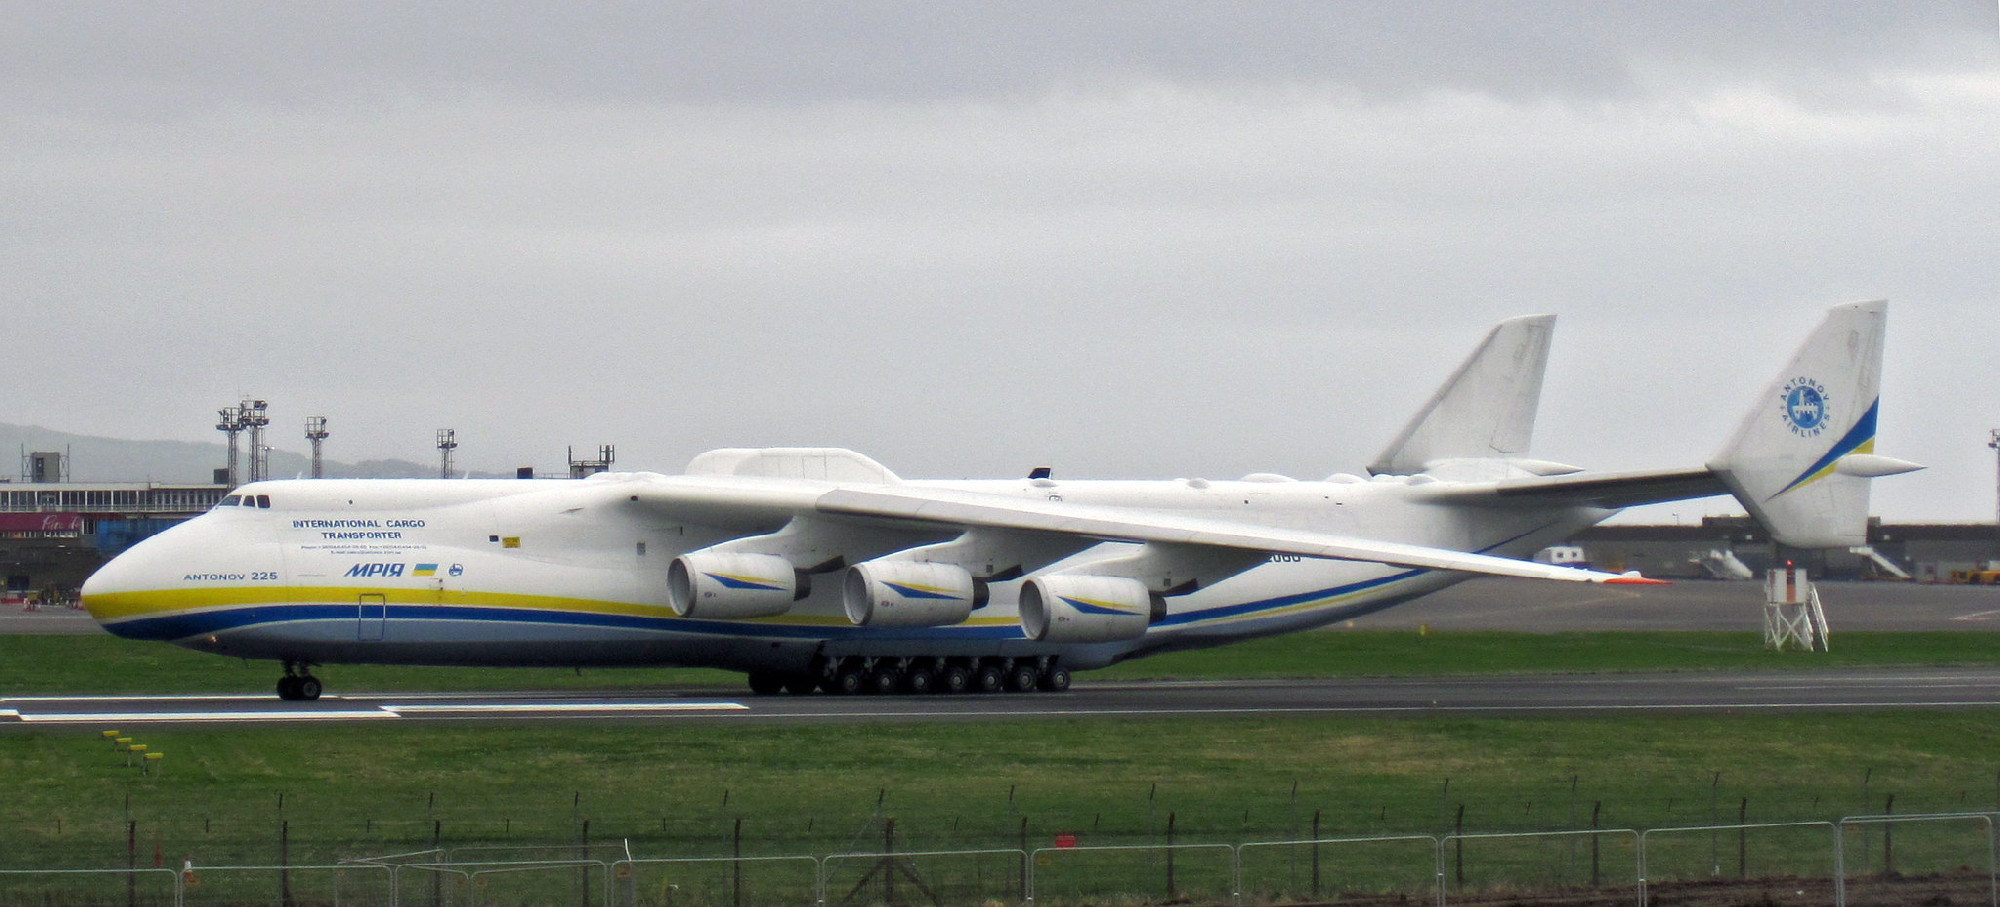 Megsemmisült a világ legnagyobb repülőgépe, az Antonov An–225-ös